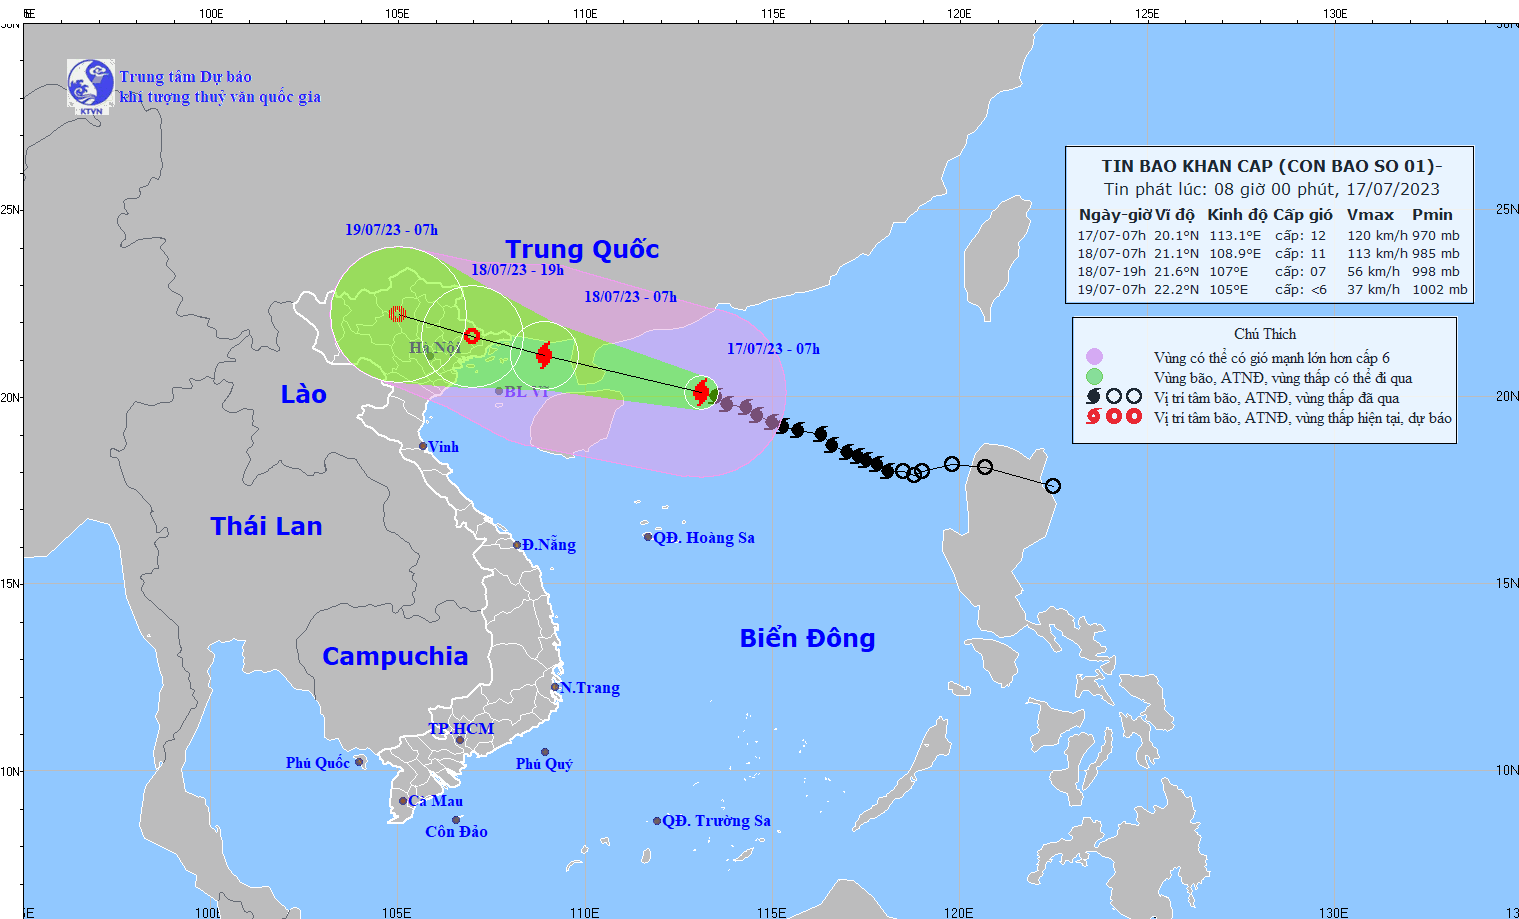 Tin bão khẩn cấp: Bão số 1 giật cấp 15, tiến nhanh vào ven biển Quảng Ninh - Hải Phòng - Ảnh 1